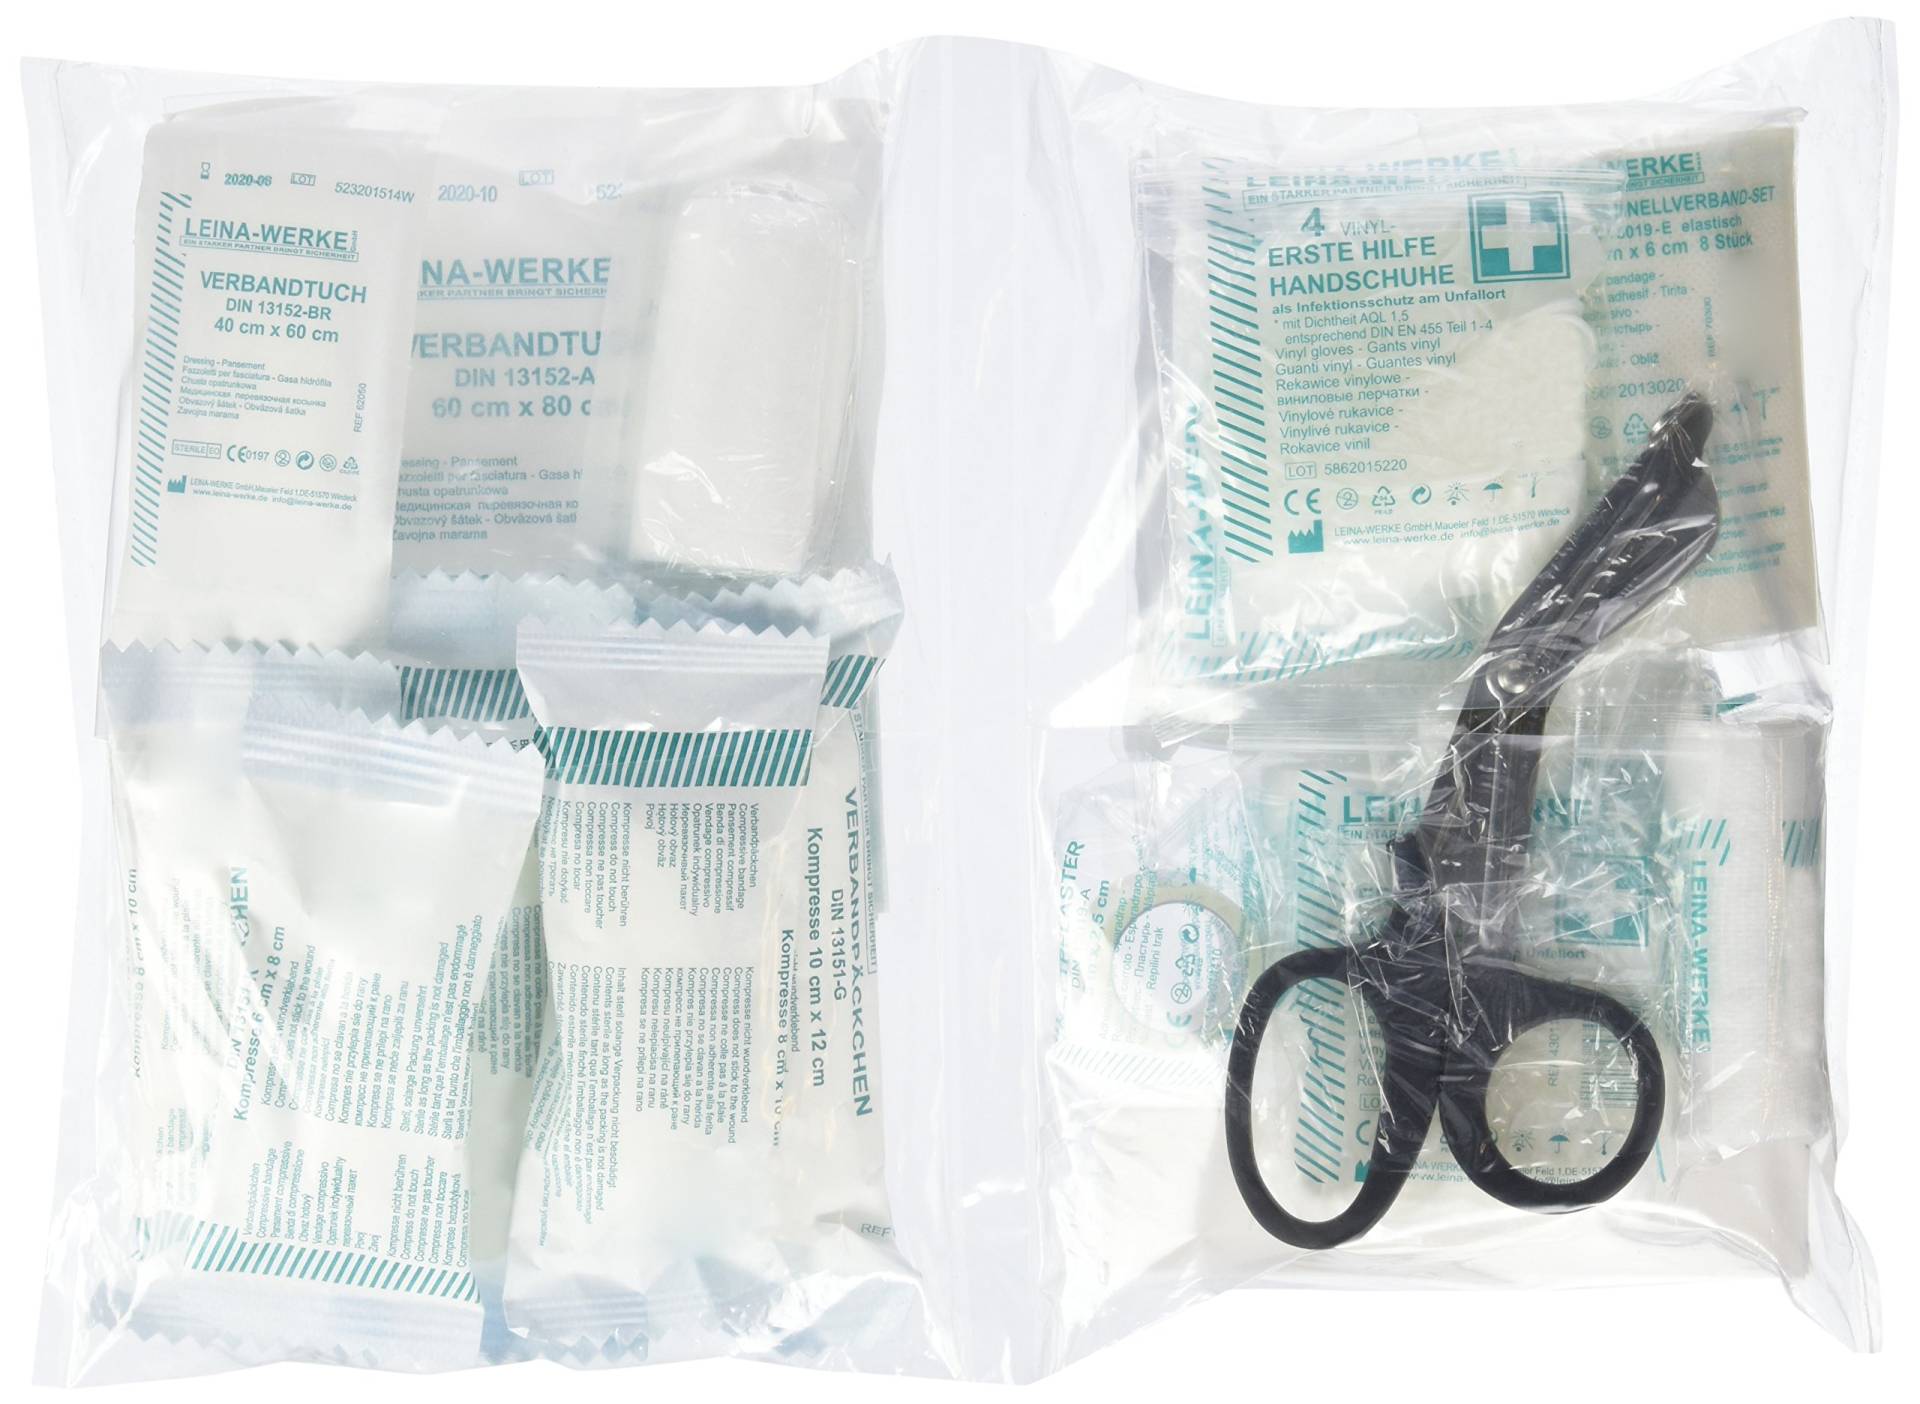 LEINAWERKE 24010 First aid Supplies DIN 13157 in Plastic Bag, in a ziplock Bag, 46 Parts 1 pc. von LEINA-WERKE